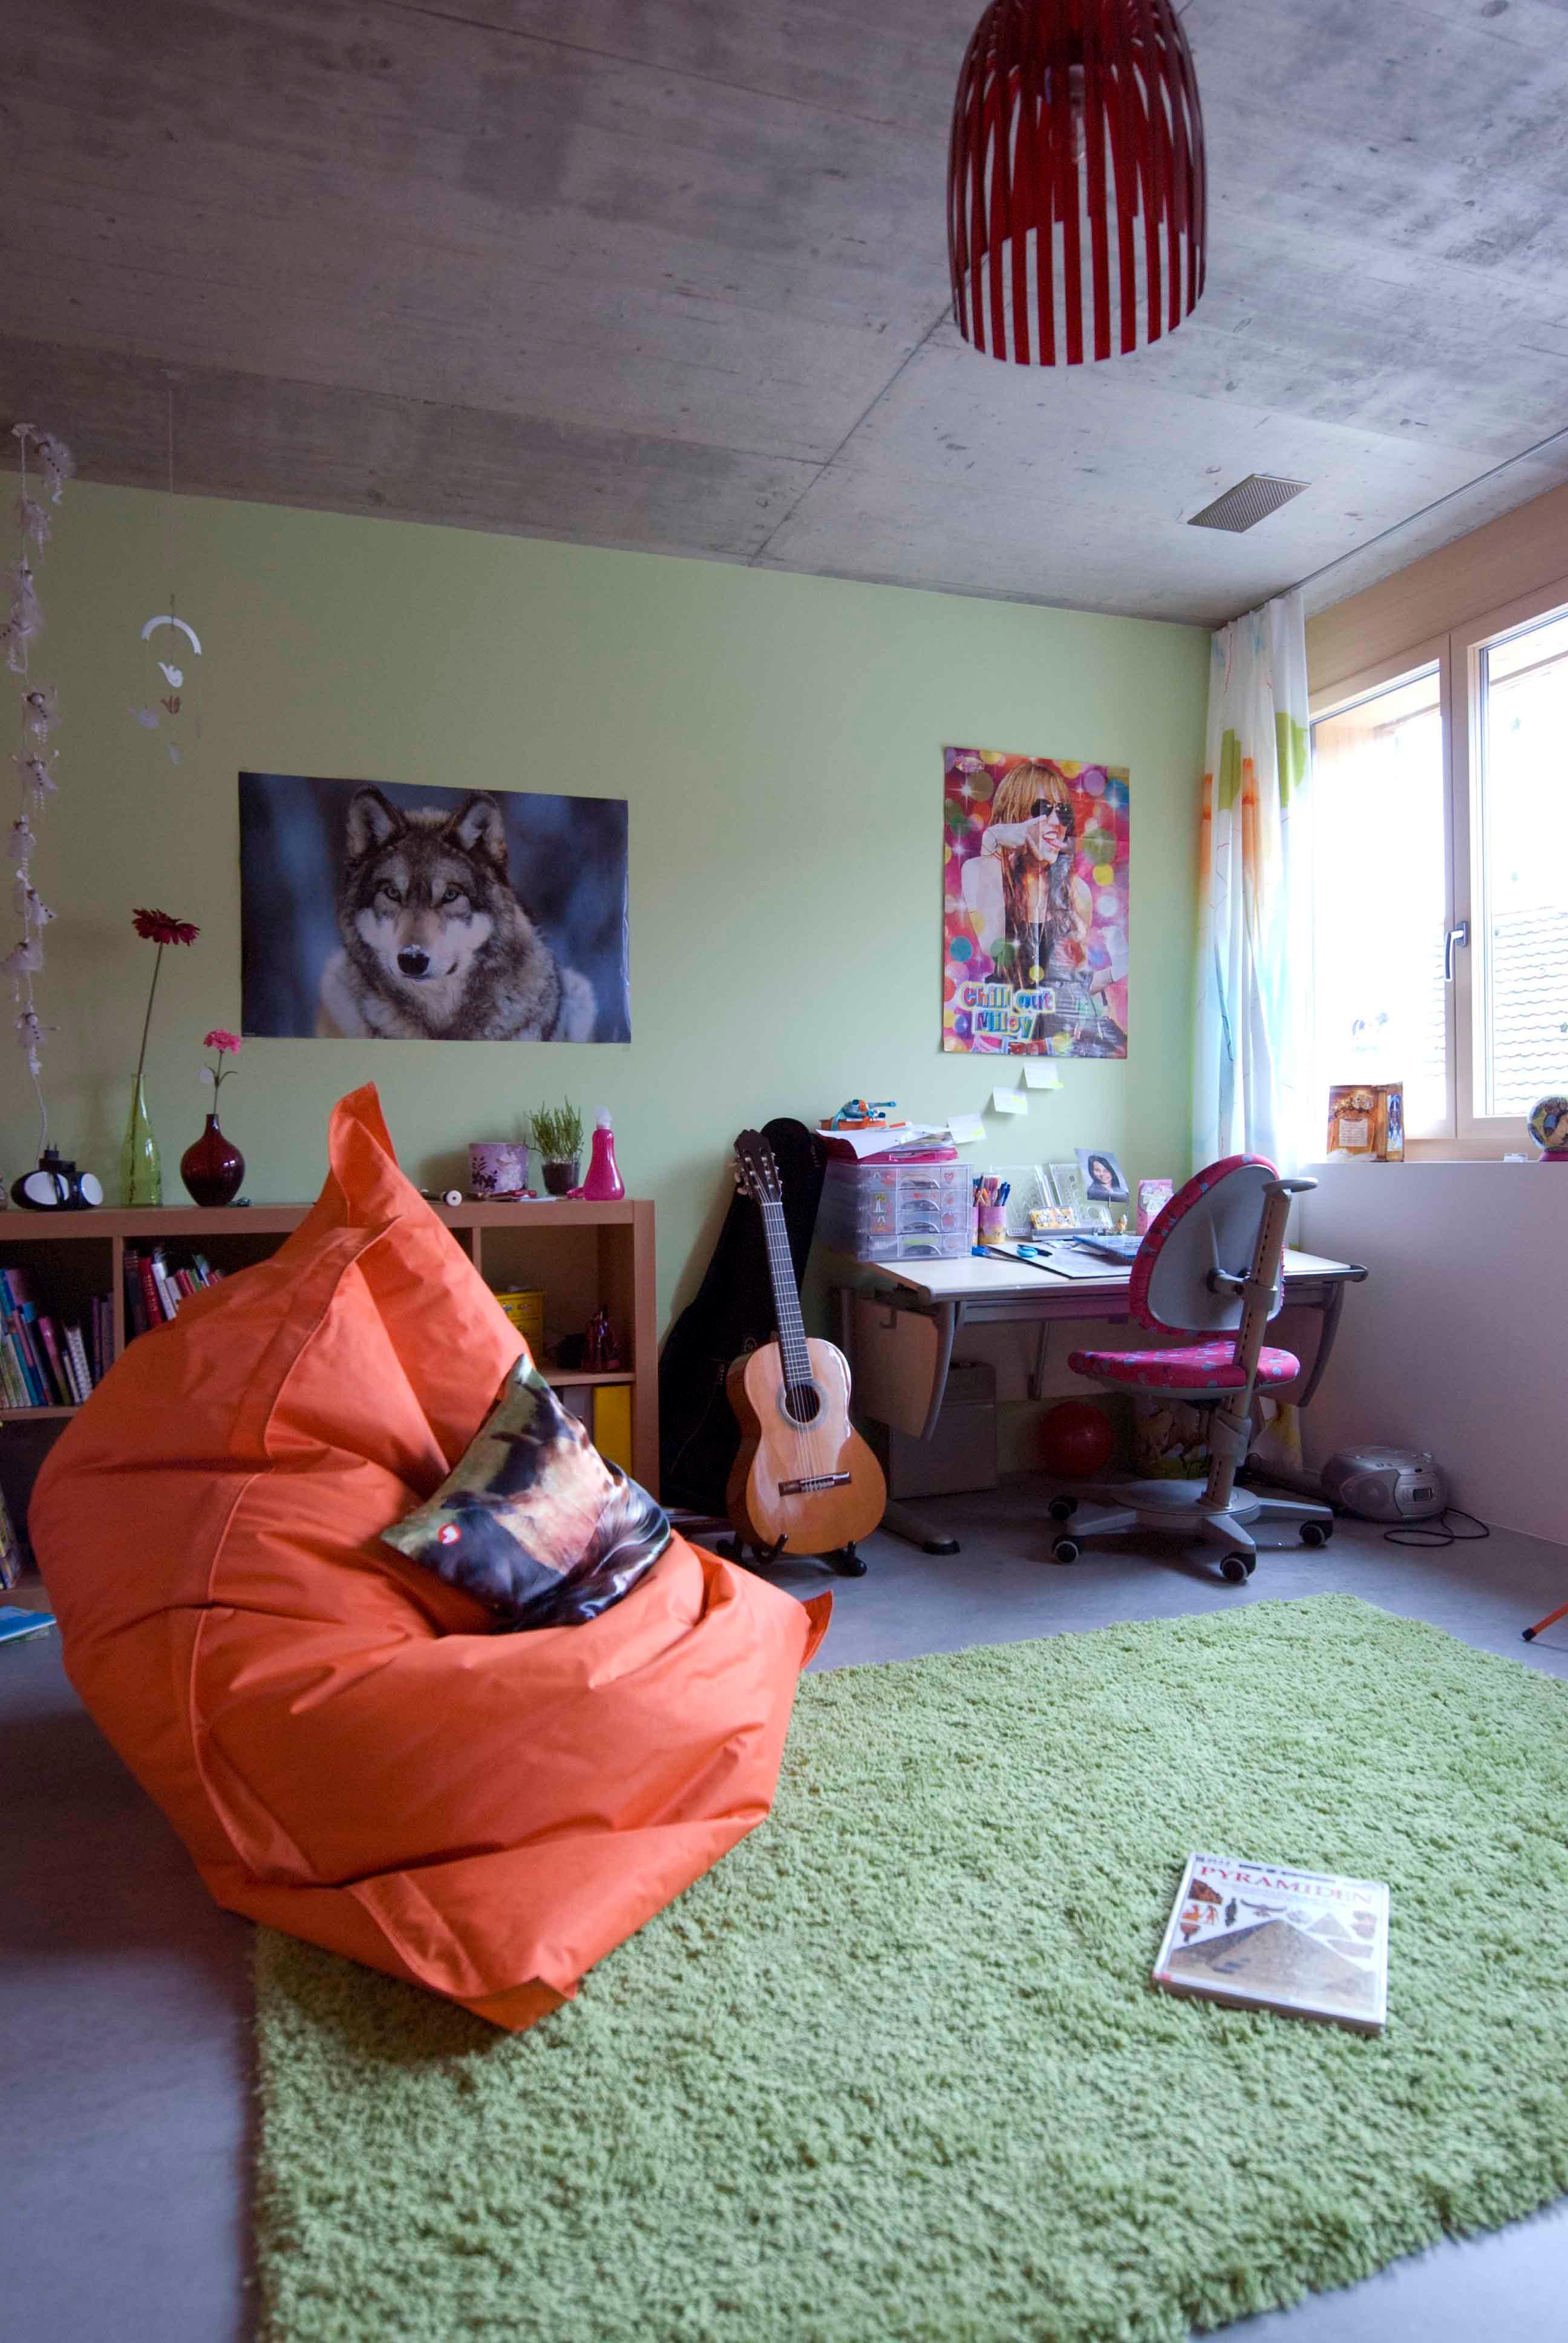 Architektur-Reportage Kirchberg Minergie-P: Teppich und Wand sorgen für Farbe im Kinderzimmer